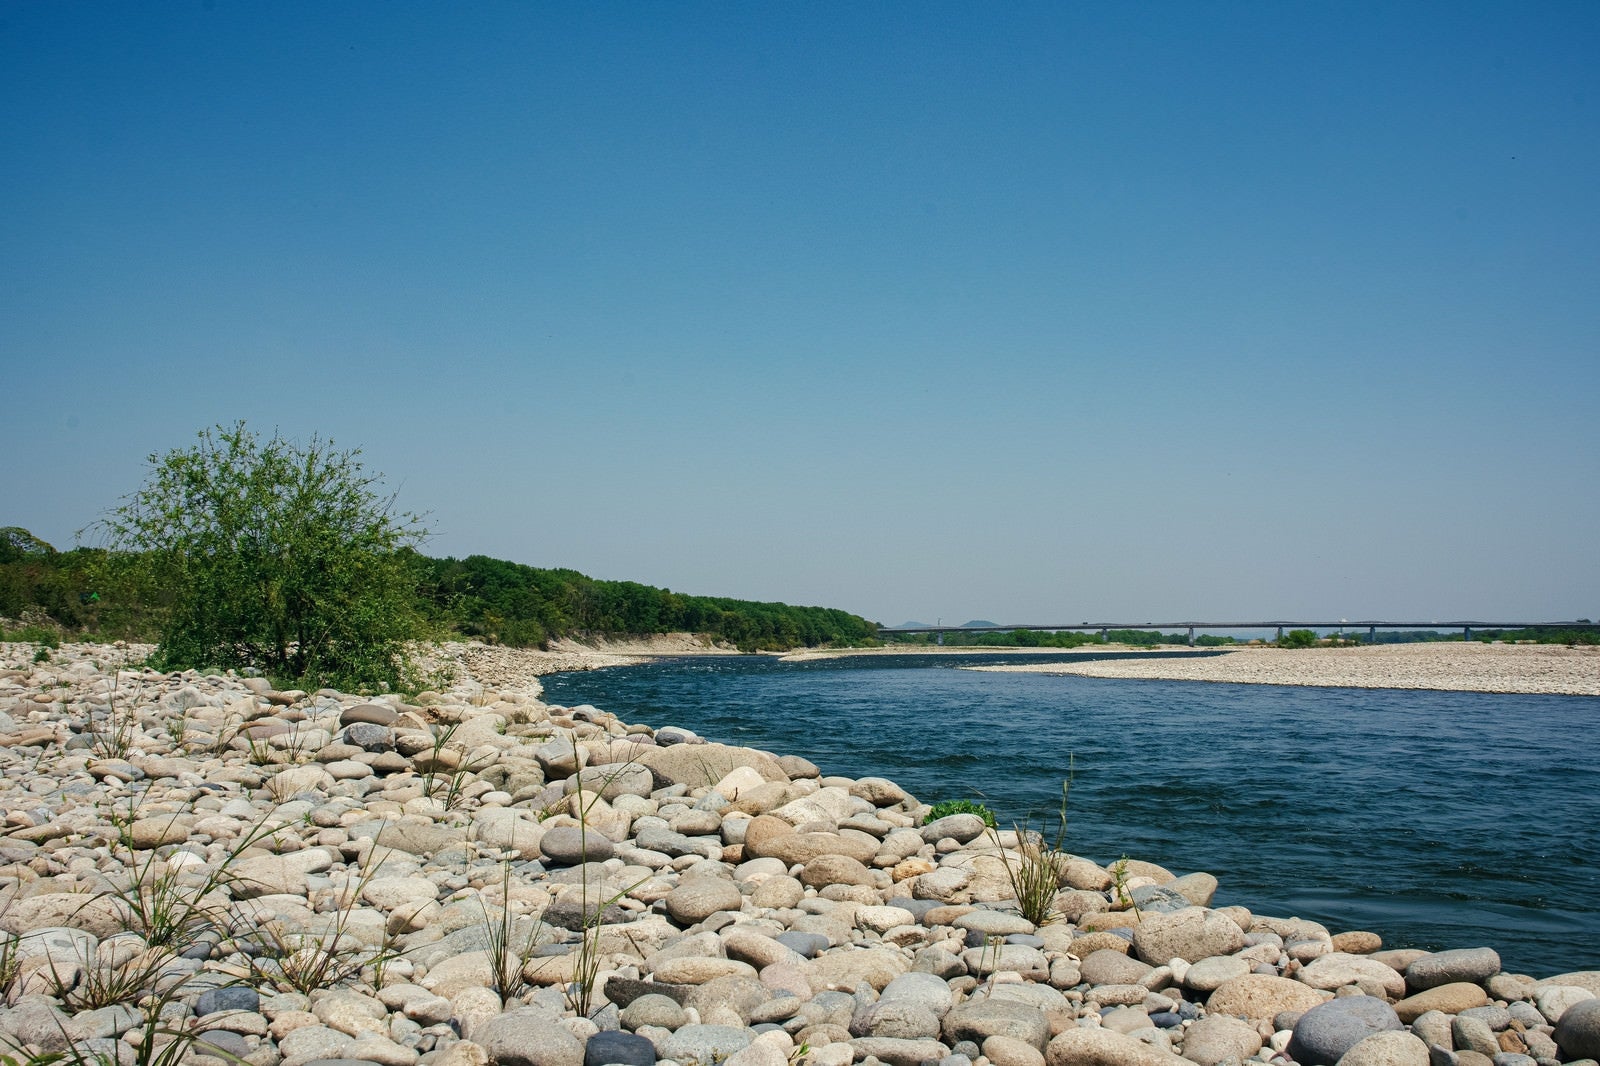 「丸いコロコロした石だらけの河原と緩やかな木曽川の流れ」の写真